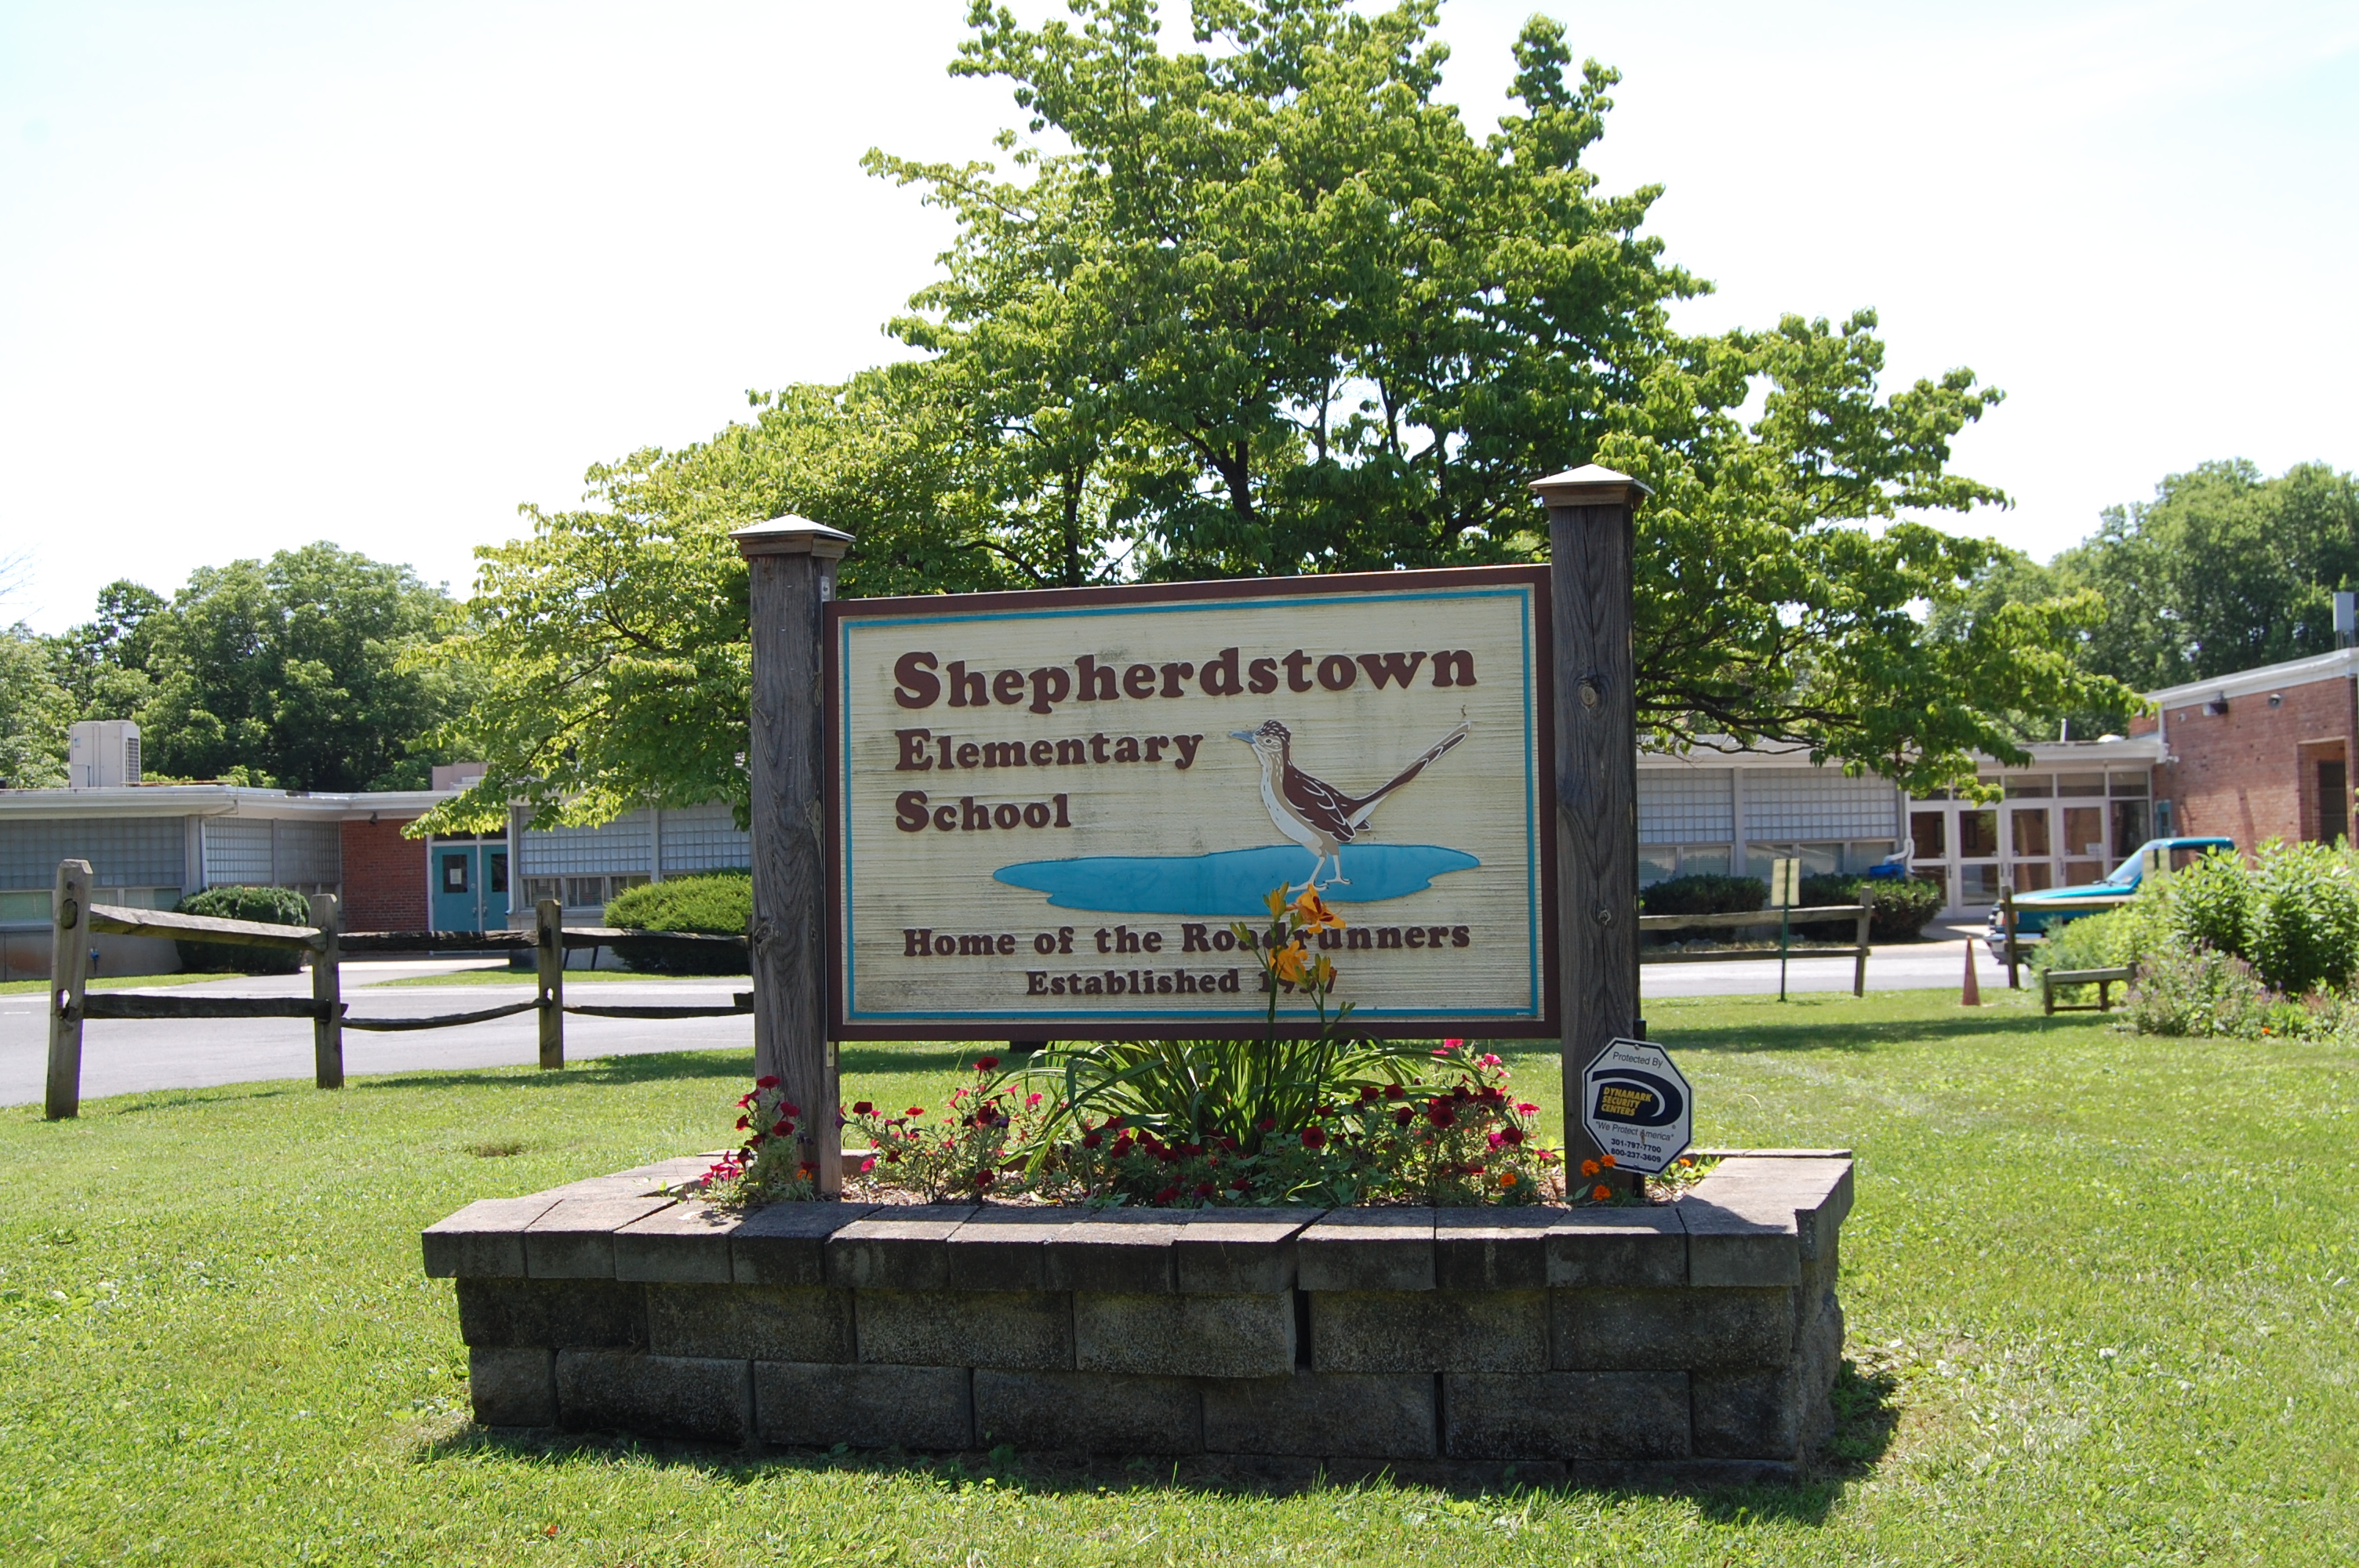 Shepherdstown Elementary